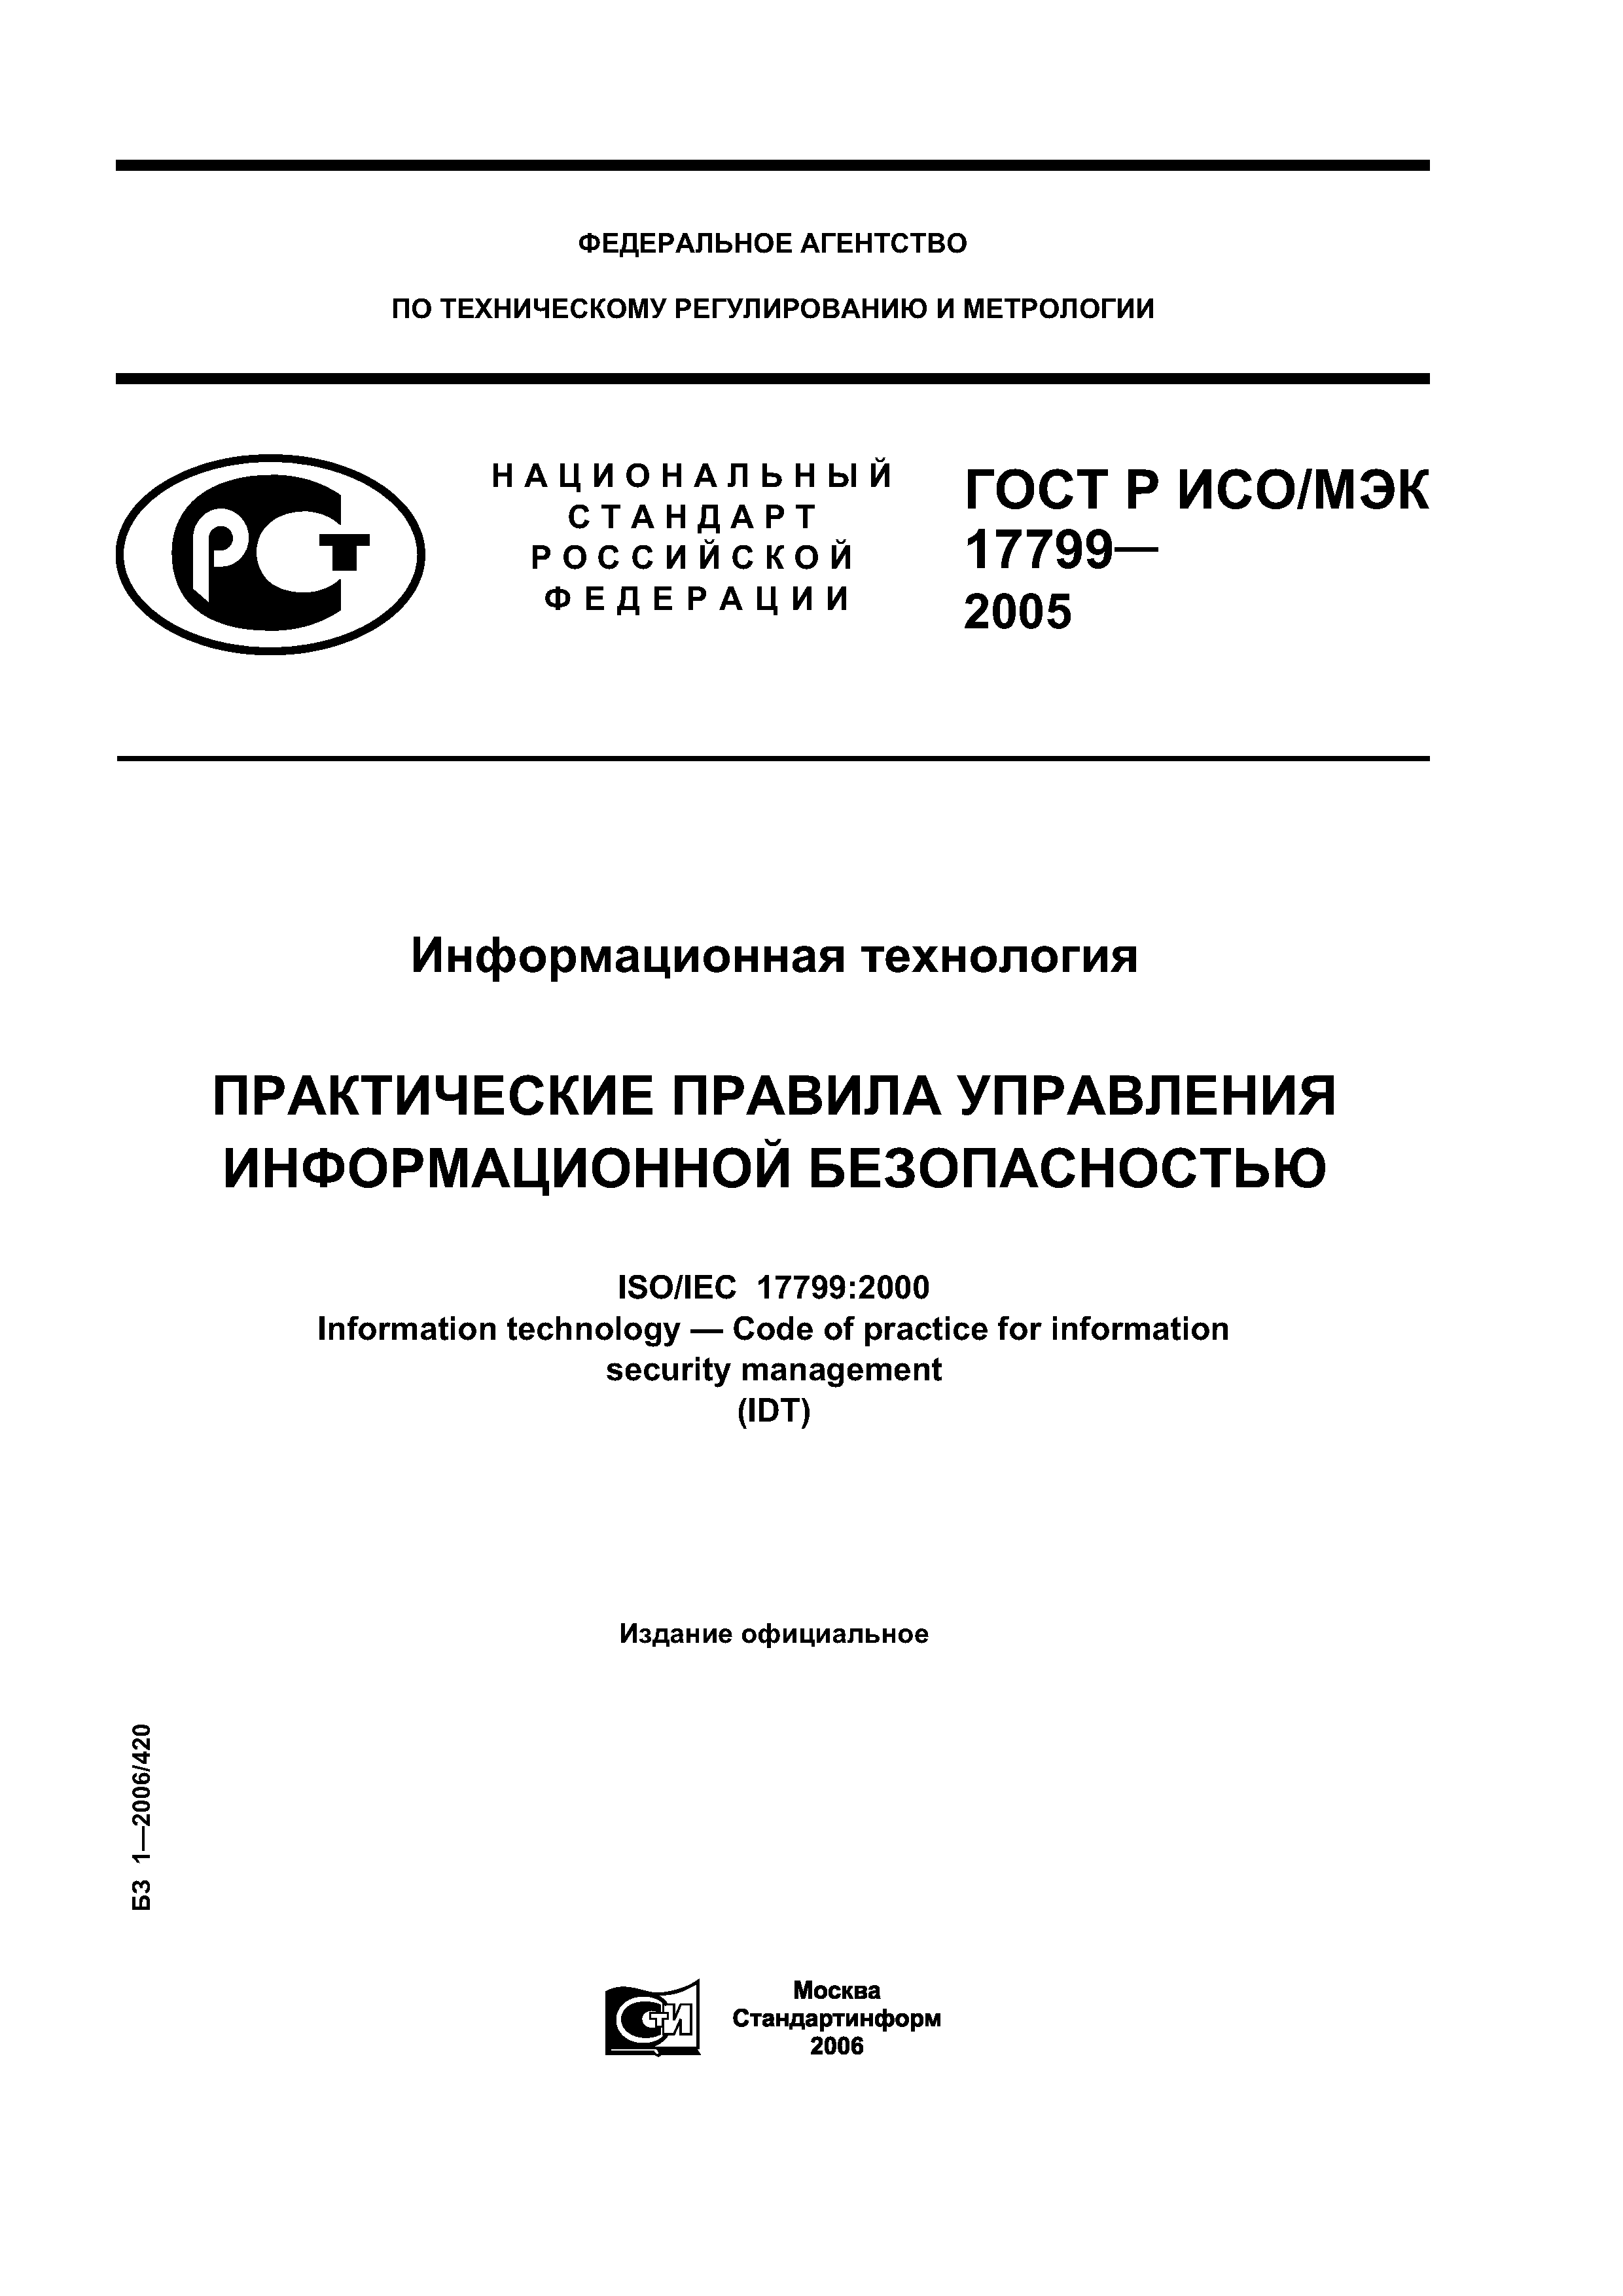 ГОСТ Р ИСО/МЭК 17799-2005